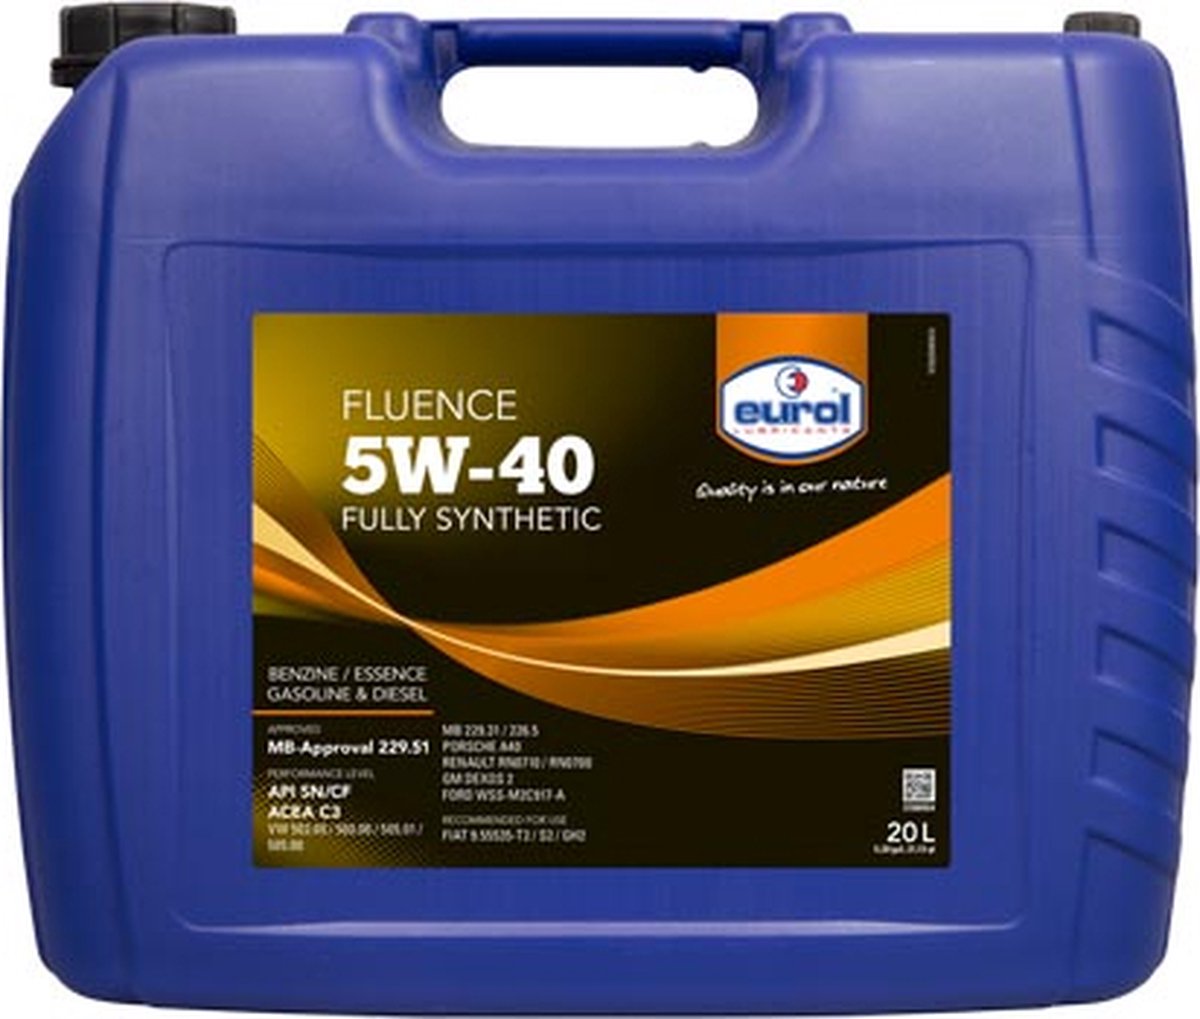 Eurol Fluence 5W-40 - 20L